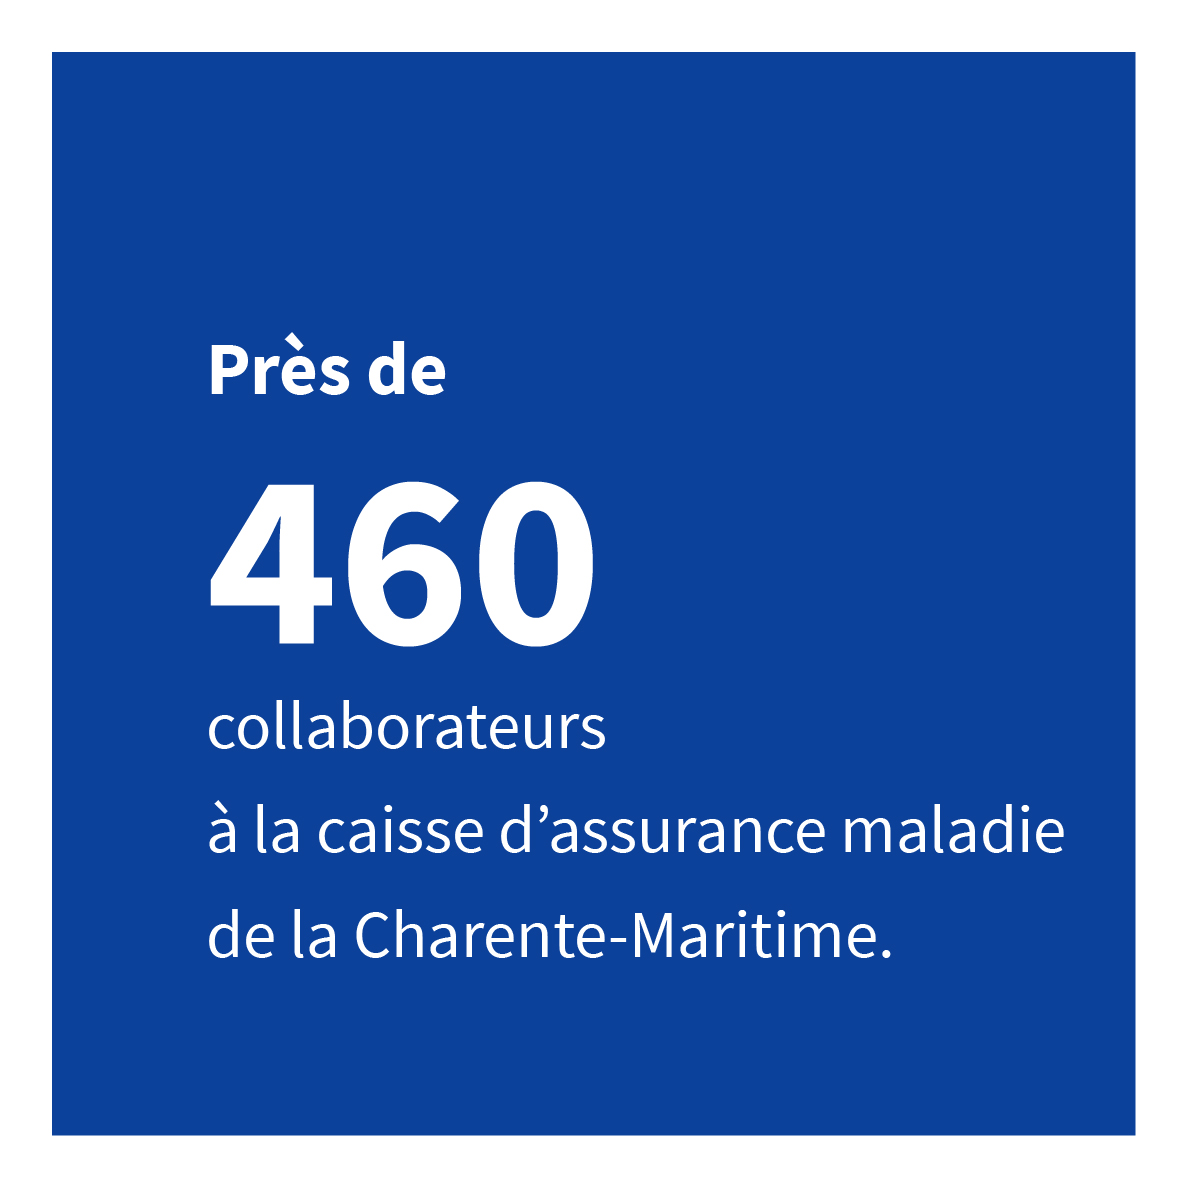 Près de 460 collaborateurs à la caisse d’assurance maladie de la Charente-Maritime.